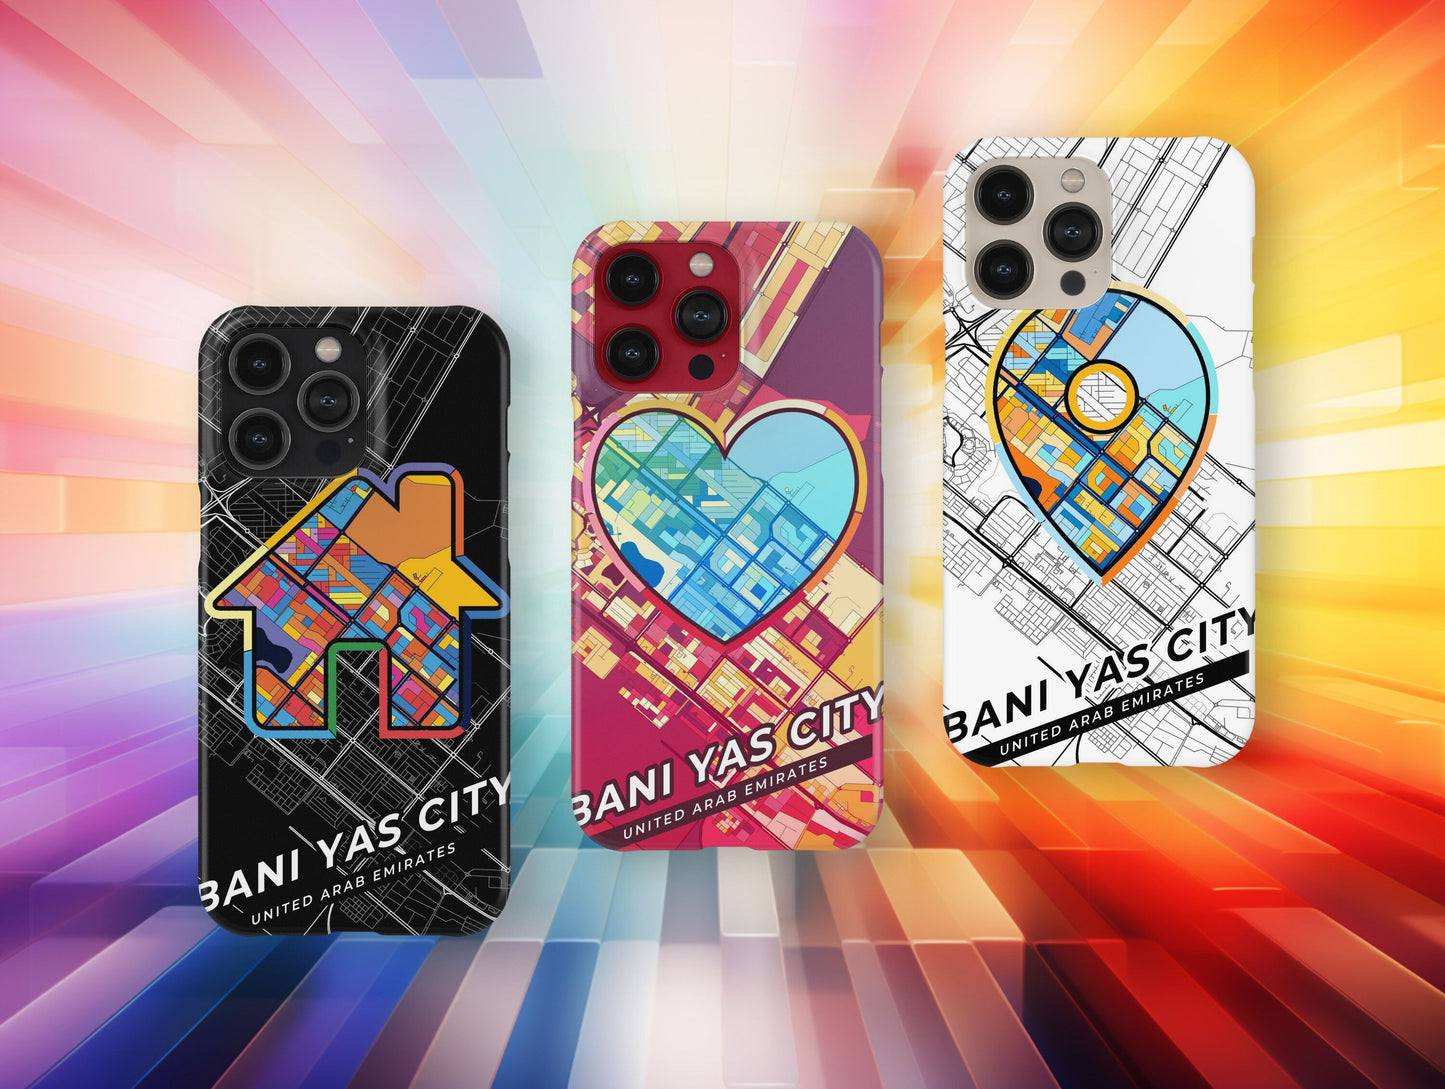 Bani Yas City United Arab Emirates slim phone case with colorful icon. Birthday, wedding or housewarming gift. Couple match cases.